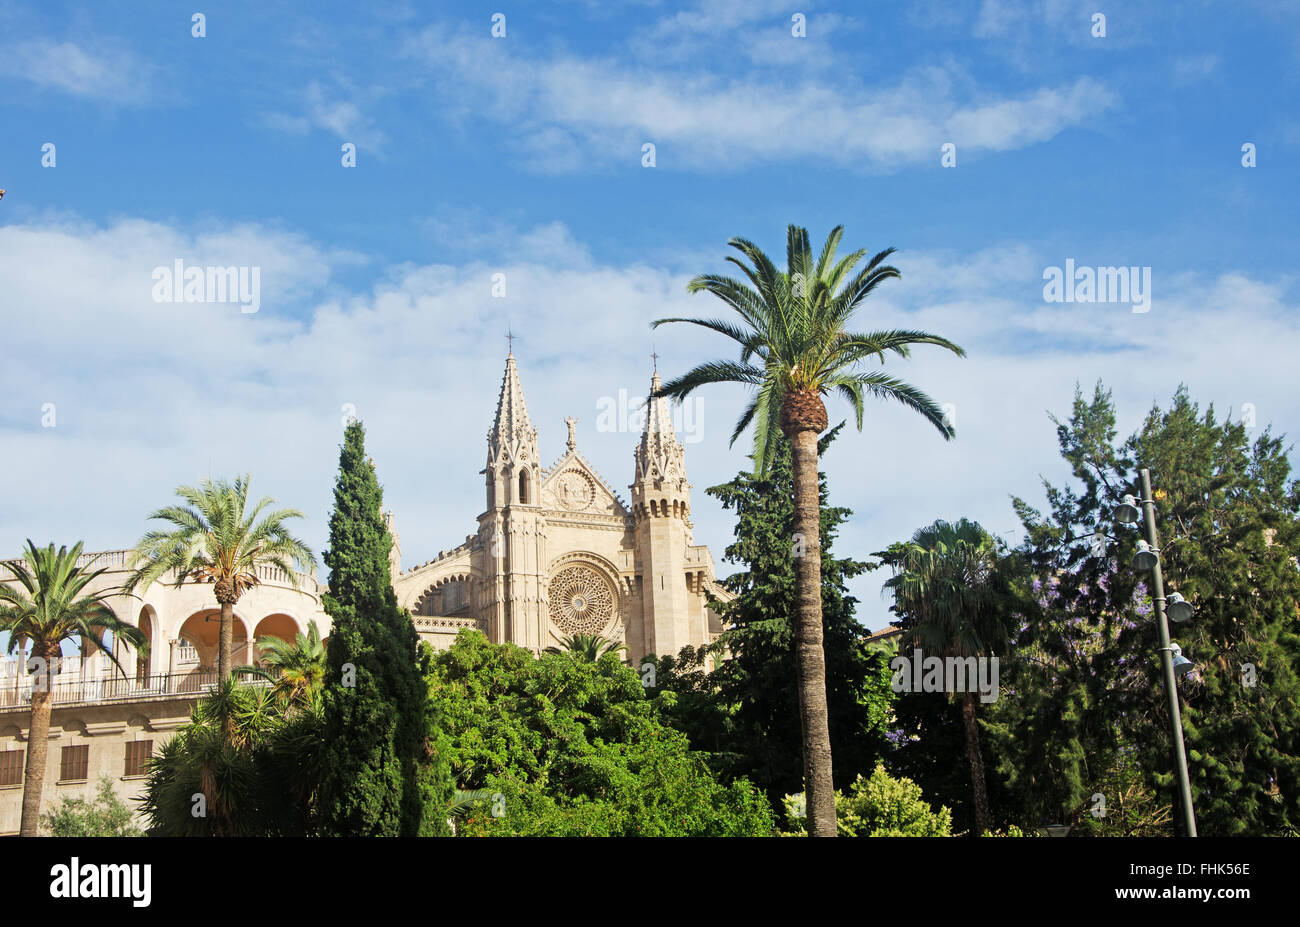 Mallorca, Maiorca, isole Baleari, Spagna, Europa: La Seu, la Cattedrale di Santa Maria di Palma, gotico romana chiesa terminata nel 1601 Foto Stock